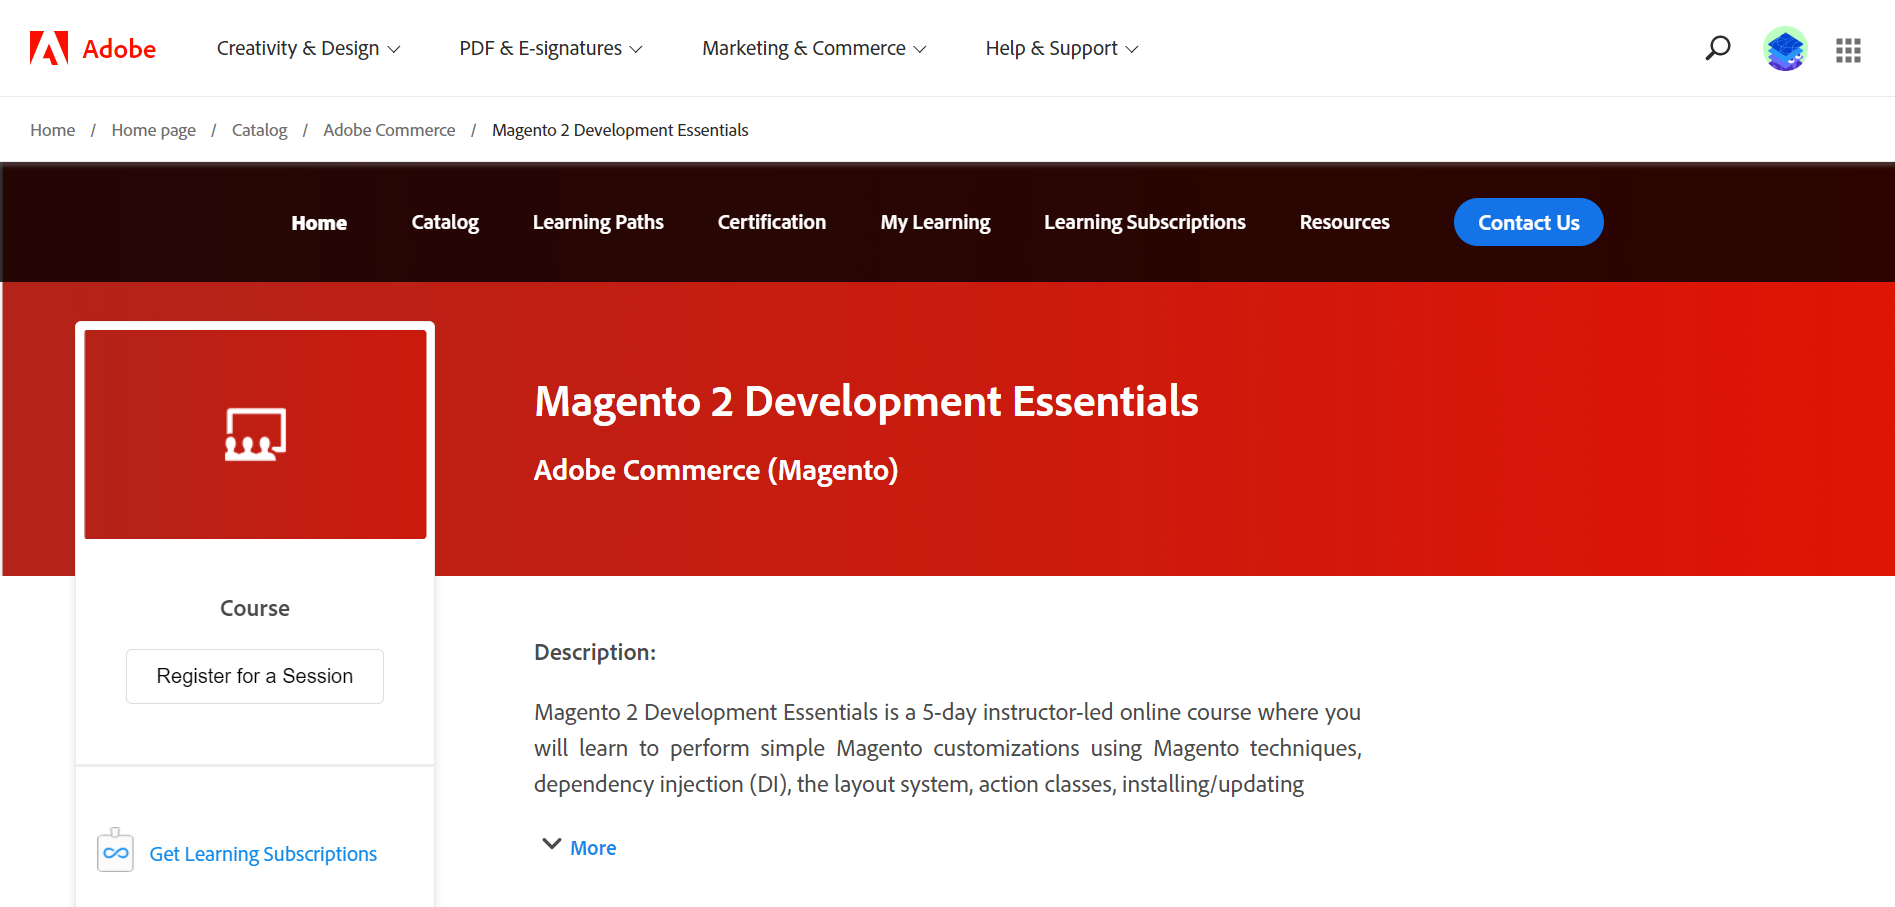 Magento 2 Development Essential course